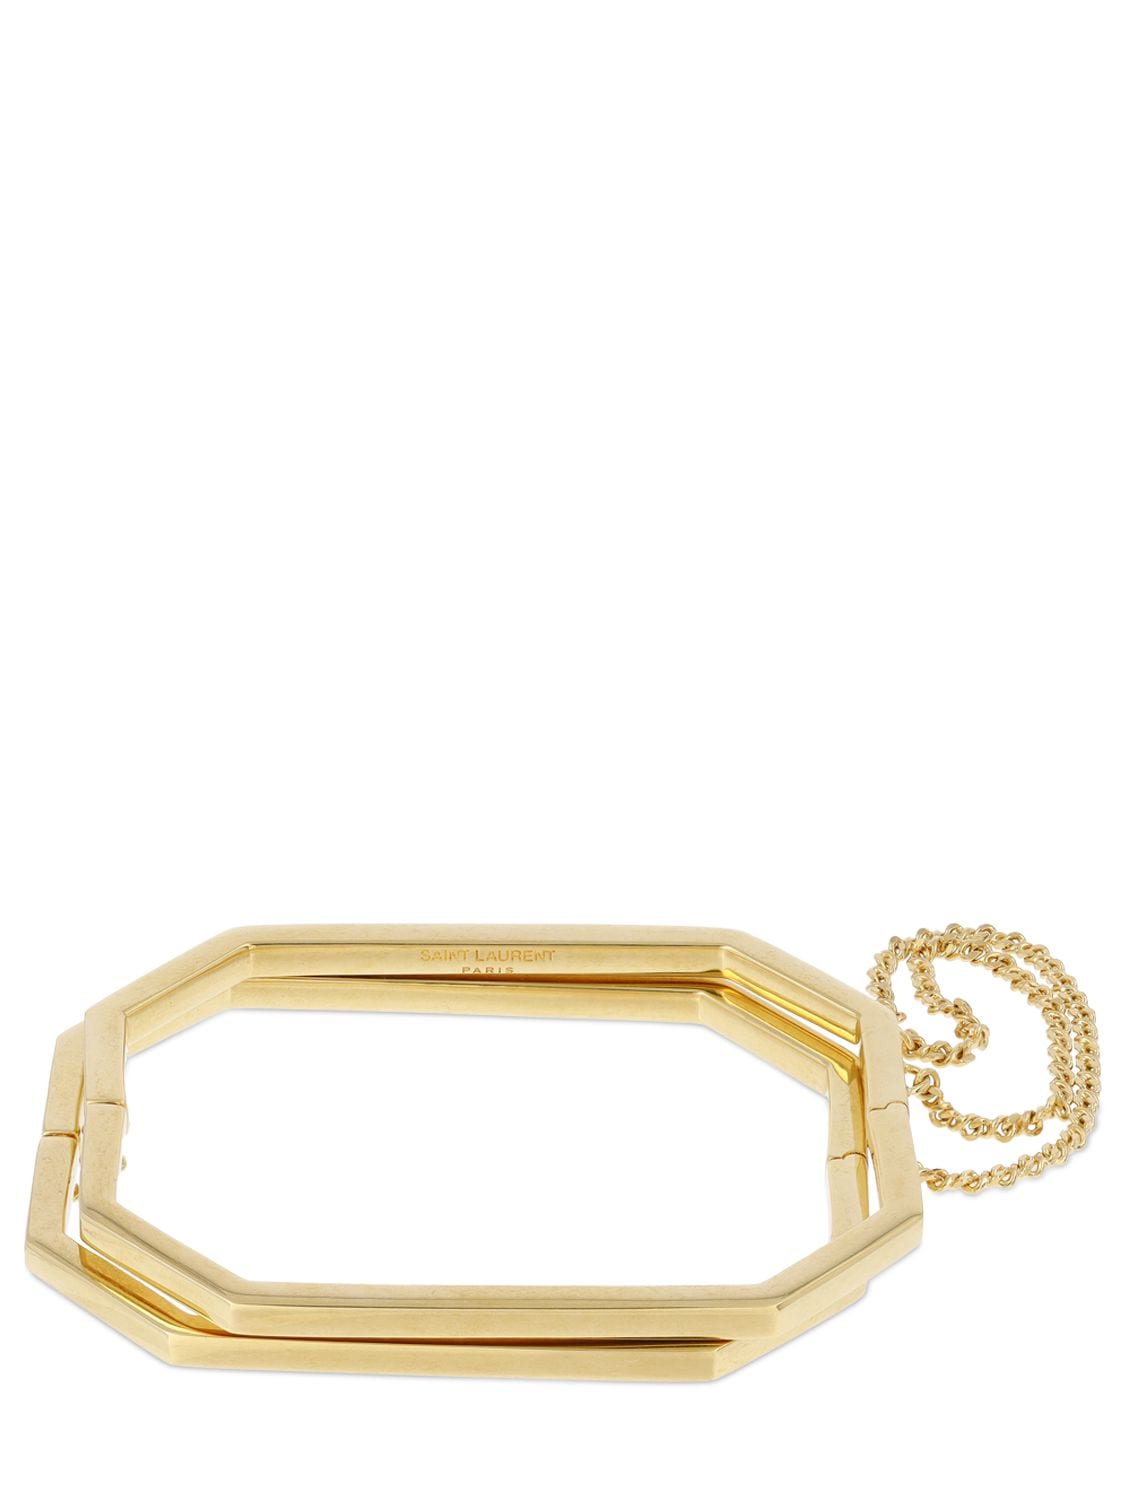 Saint Laurent Menottes Bracelet In Gold